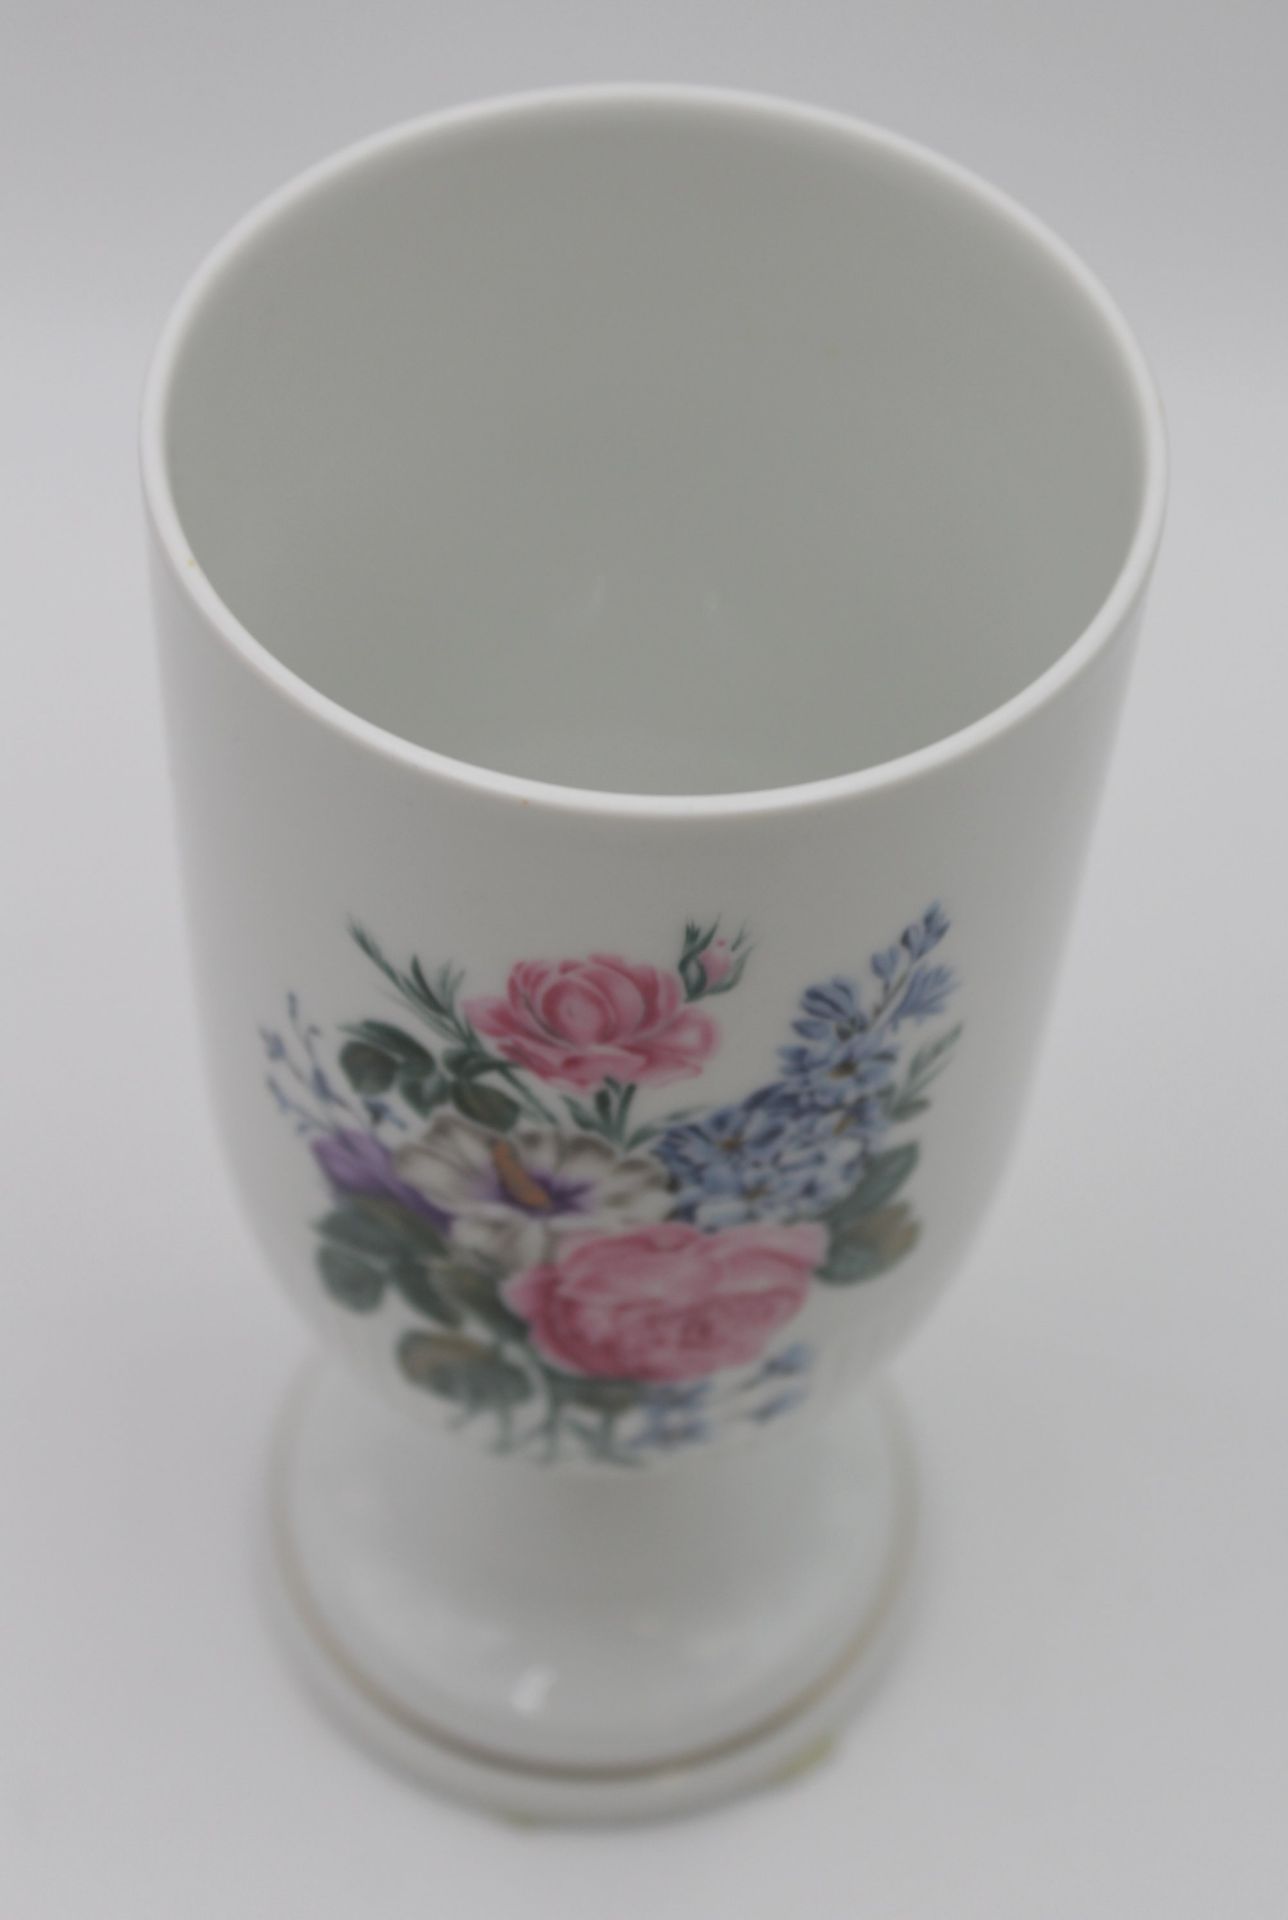 Vase auf Stand, Hutschenreuther, florales Dekor, Marke durchschliffen, H-20,8cm. - Bild 2 aus 5